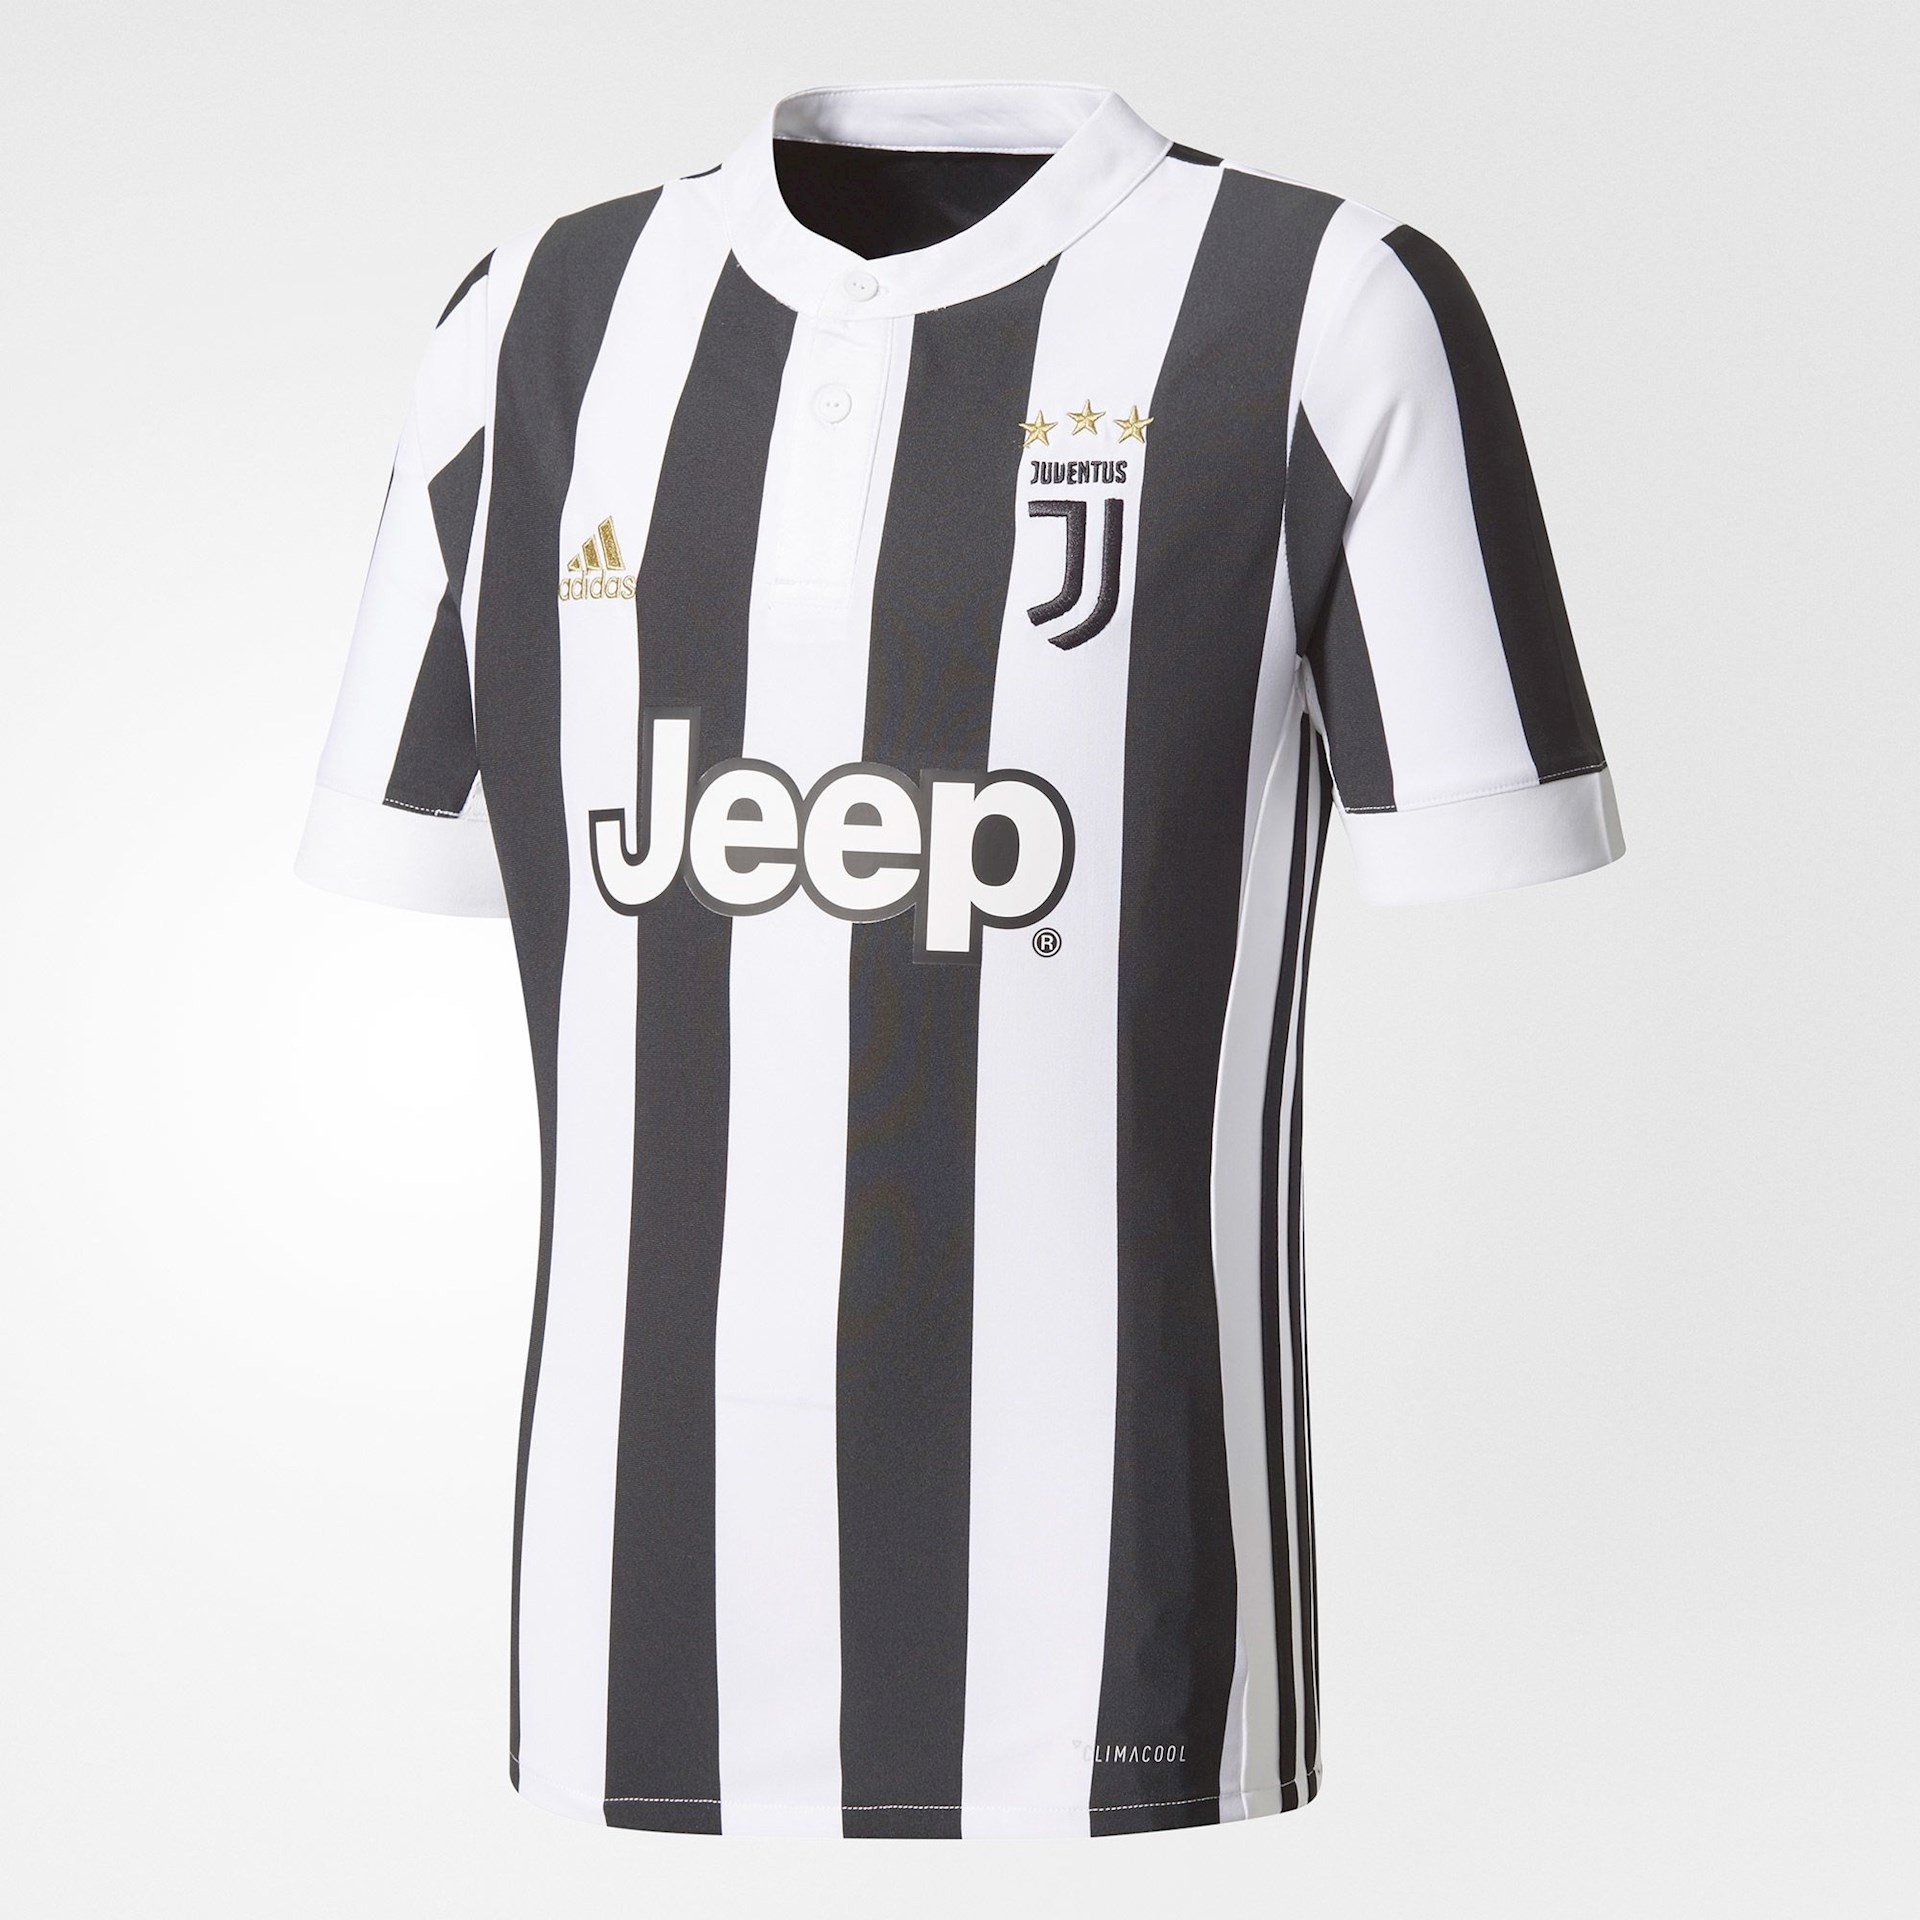 Juventus thuis shirt KIDS - Voetbalshirts.com